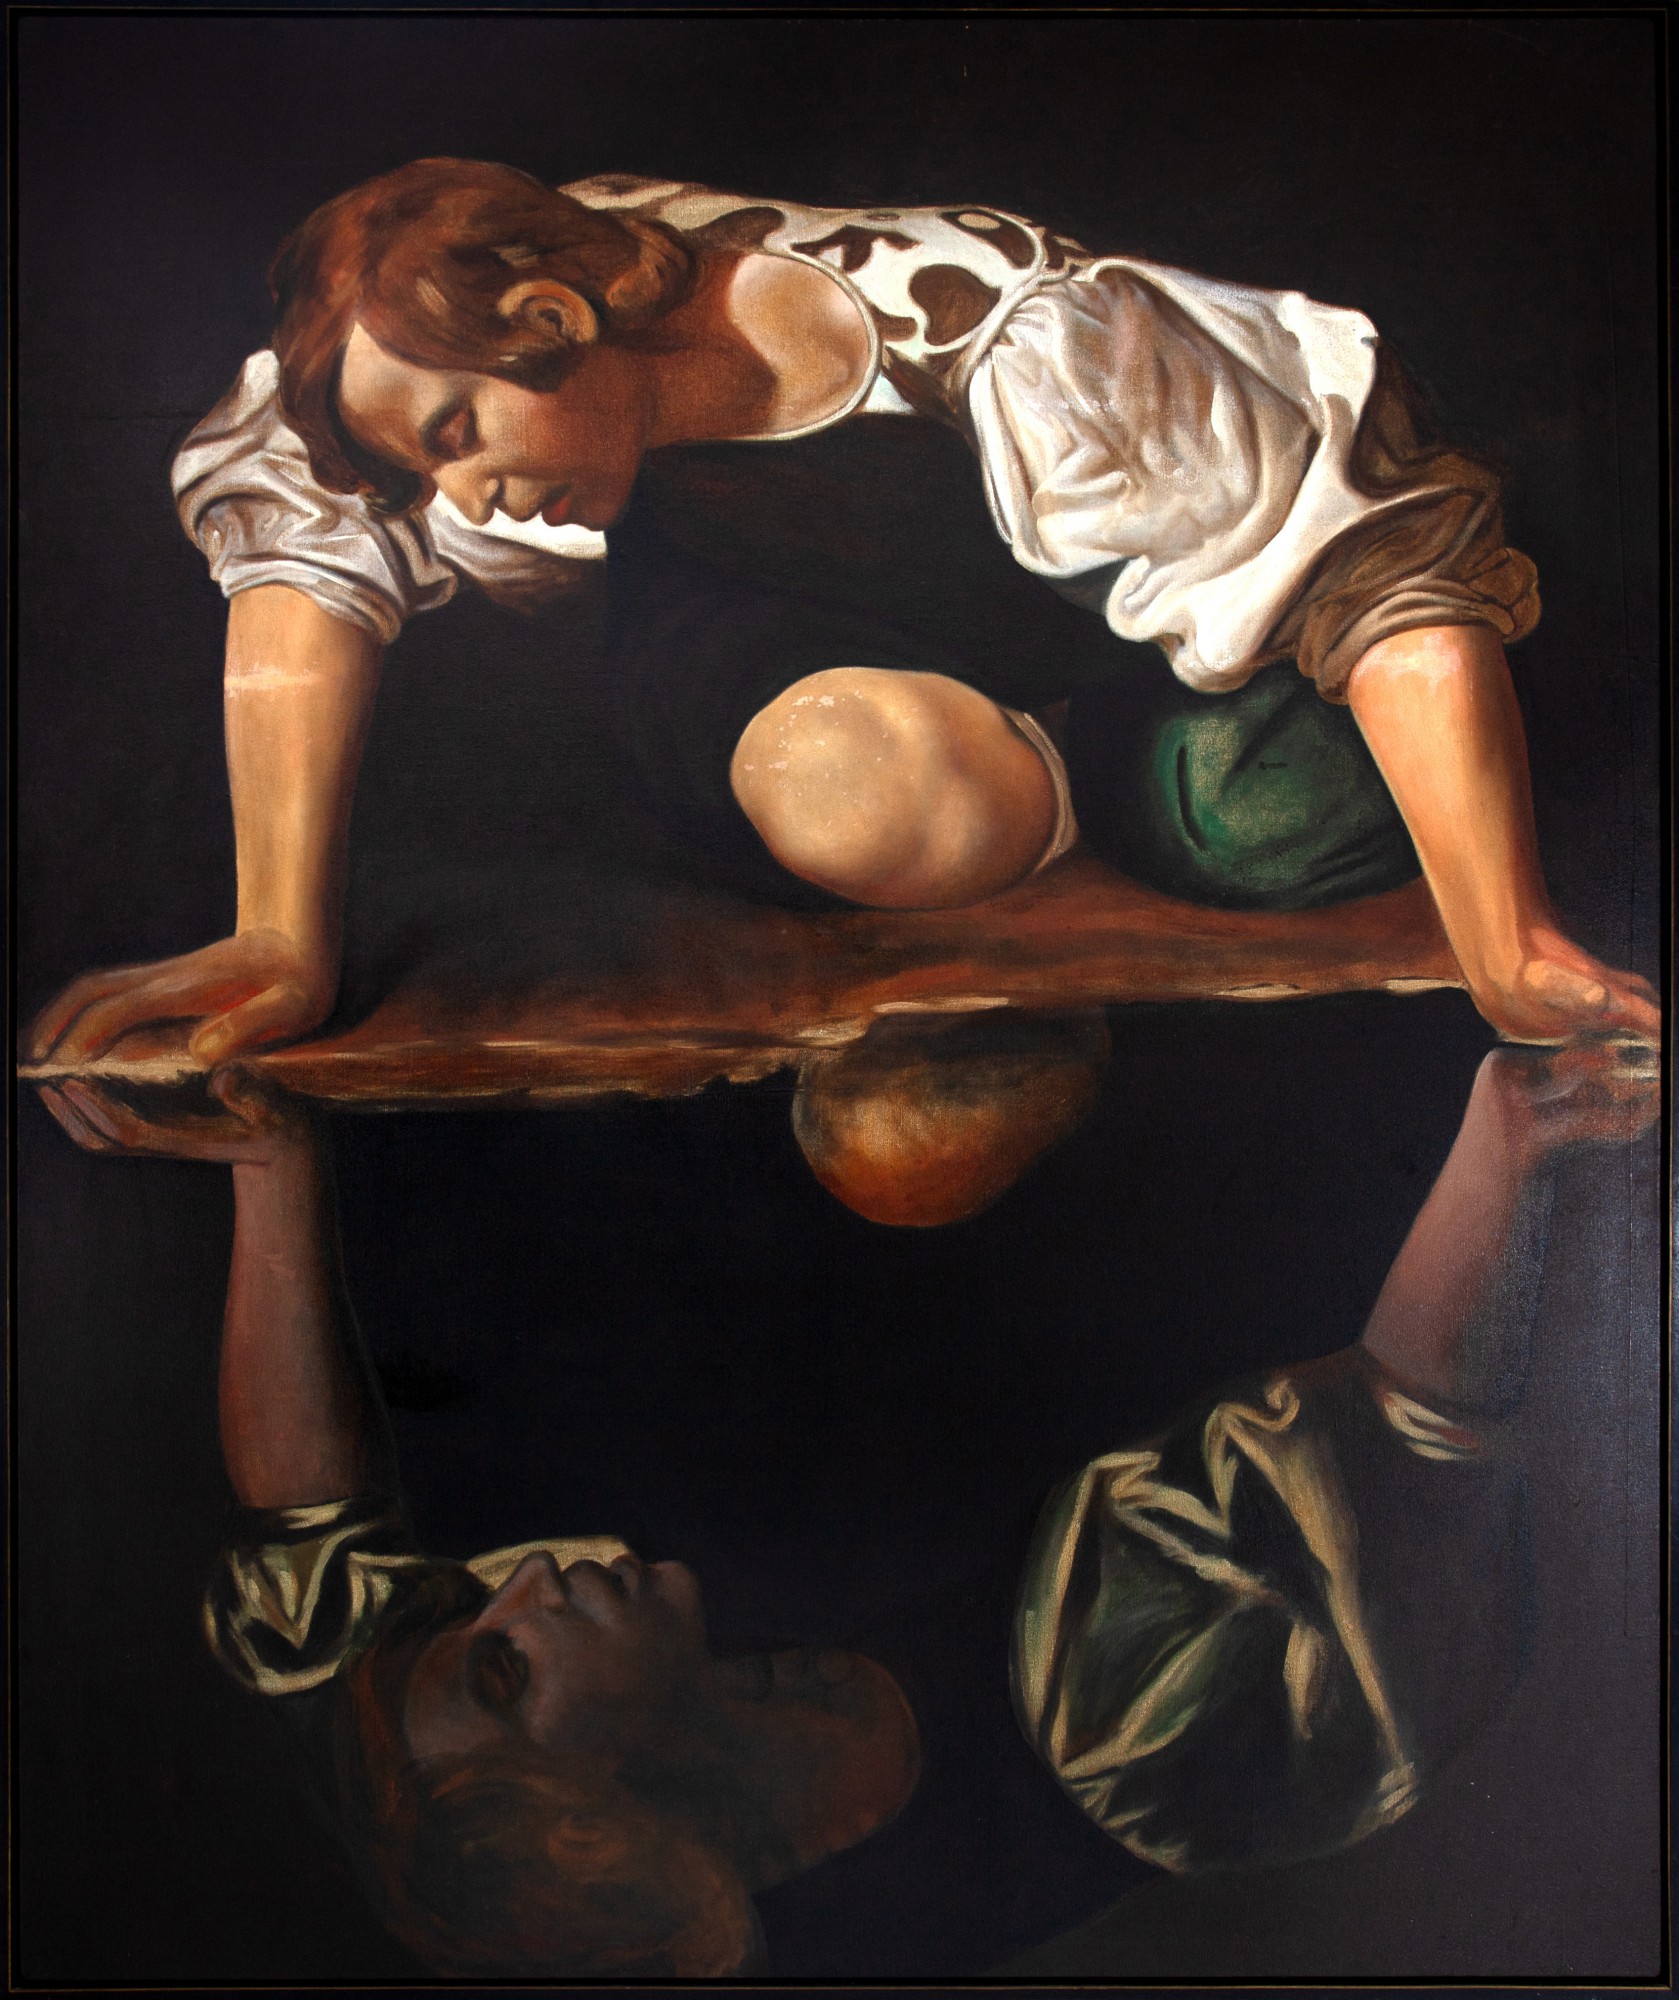 Mario Gruber - Releitura de Narciso de Caravaggio